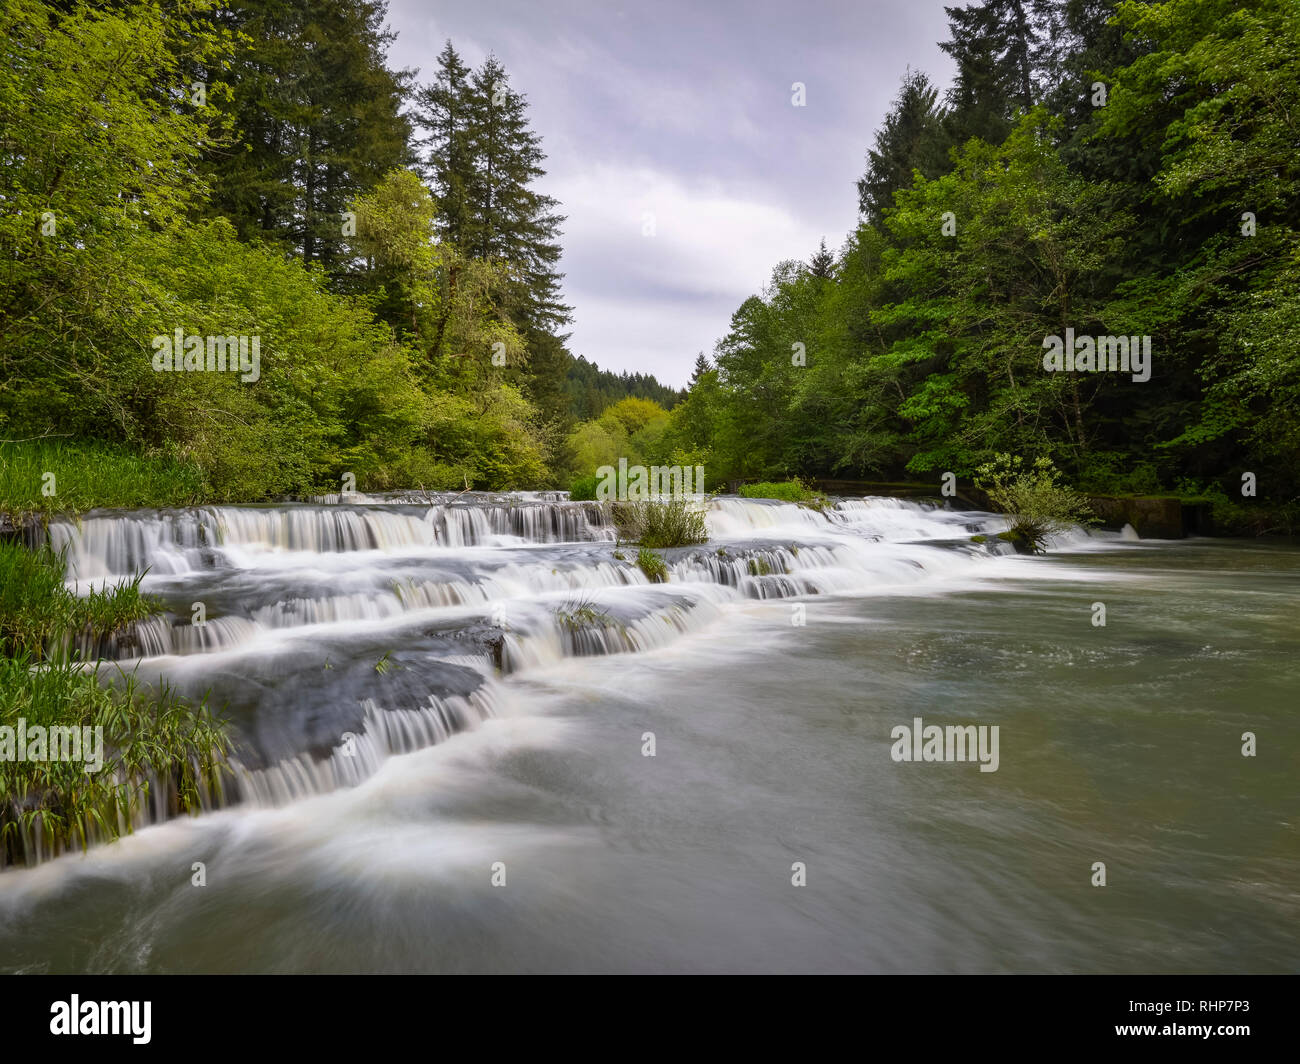 Chutes de Siuslaw, rivière Siuslaw, montagnes de la chaîne côtière, de l'Oregon. Banque D'Images